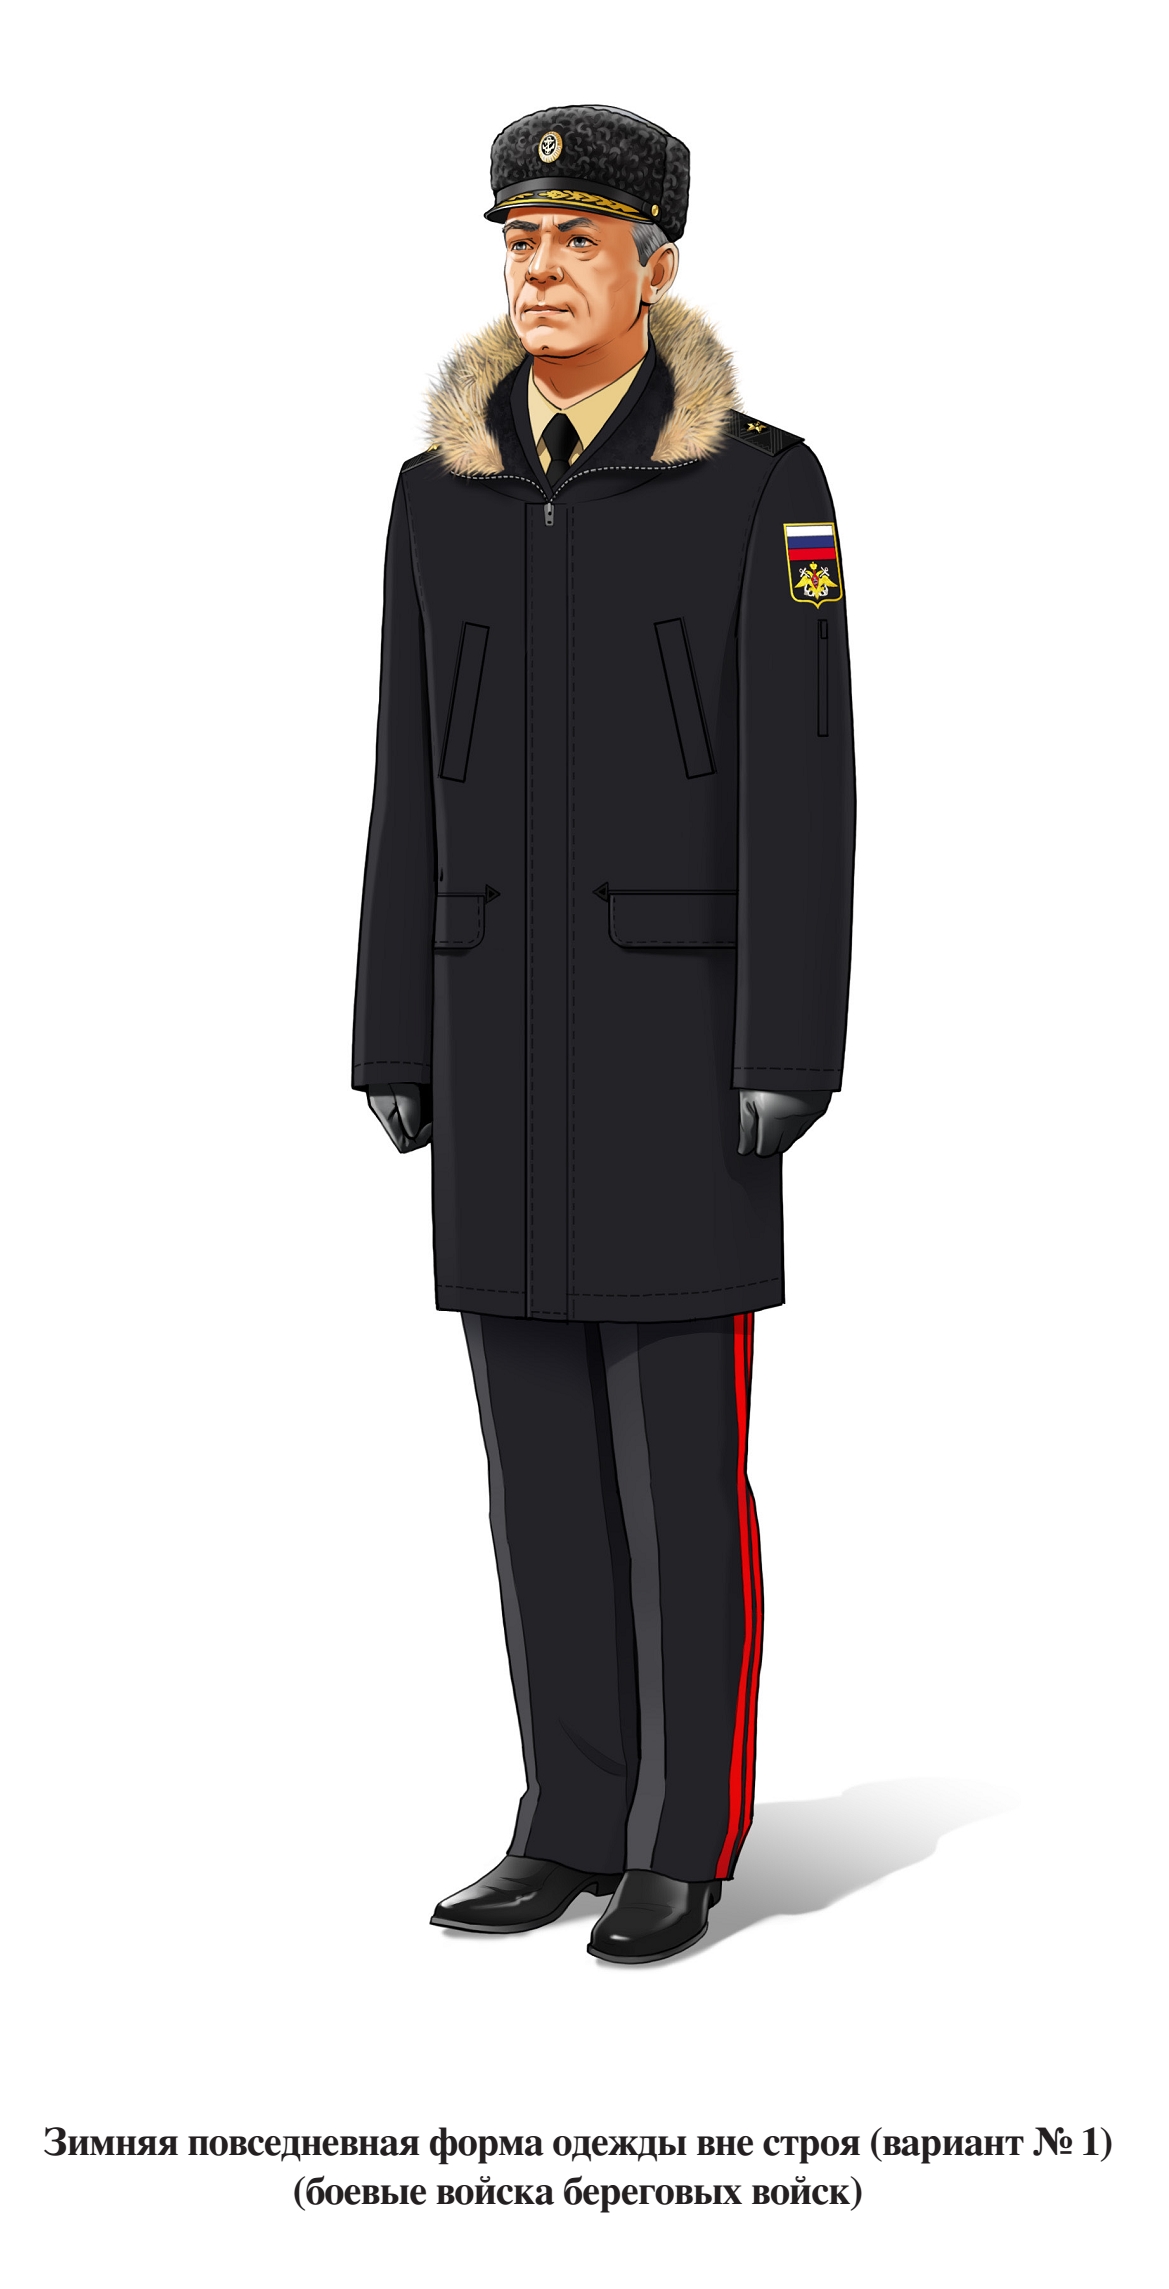 Зимняя повседневная форма ВМФ для береговых войск вне строя, адмирал